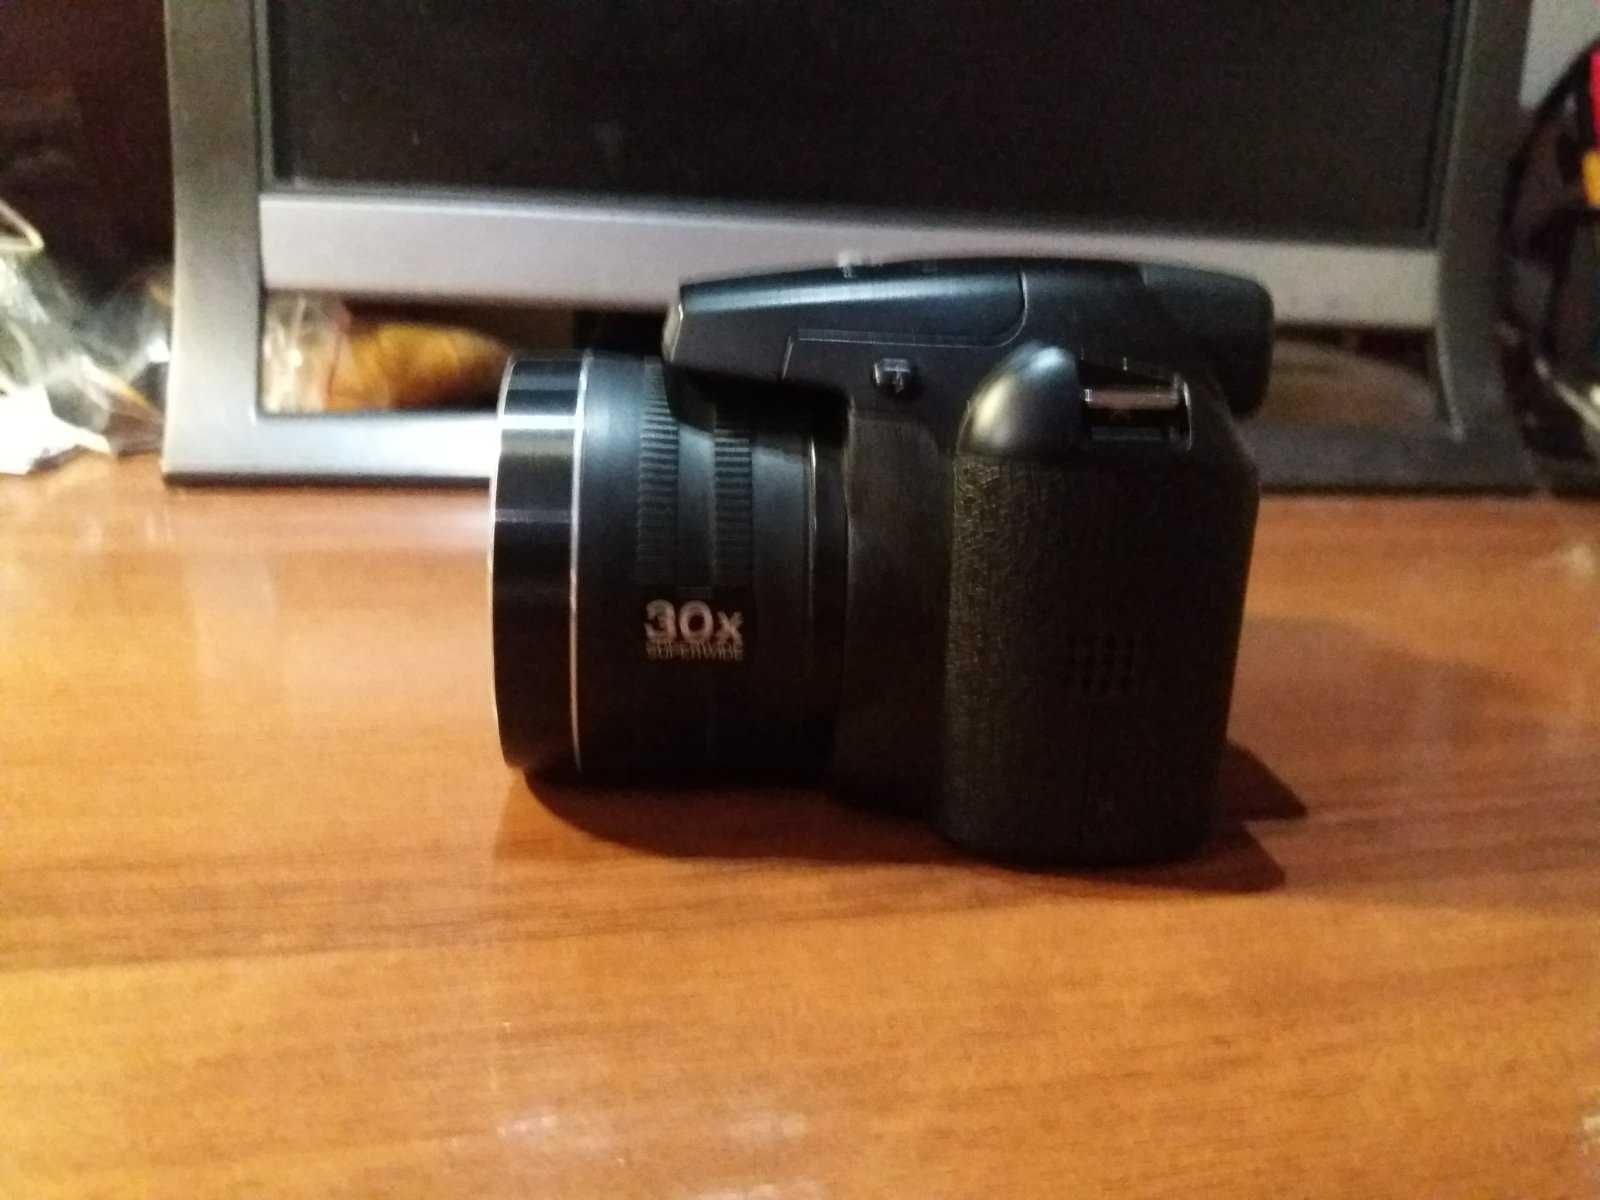 Фотоапарат Fujifilm S4500